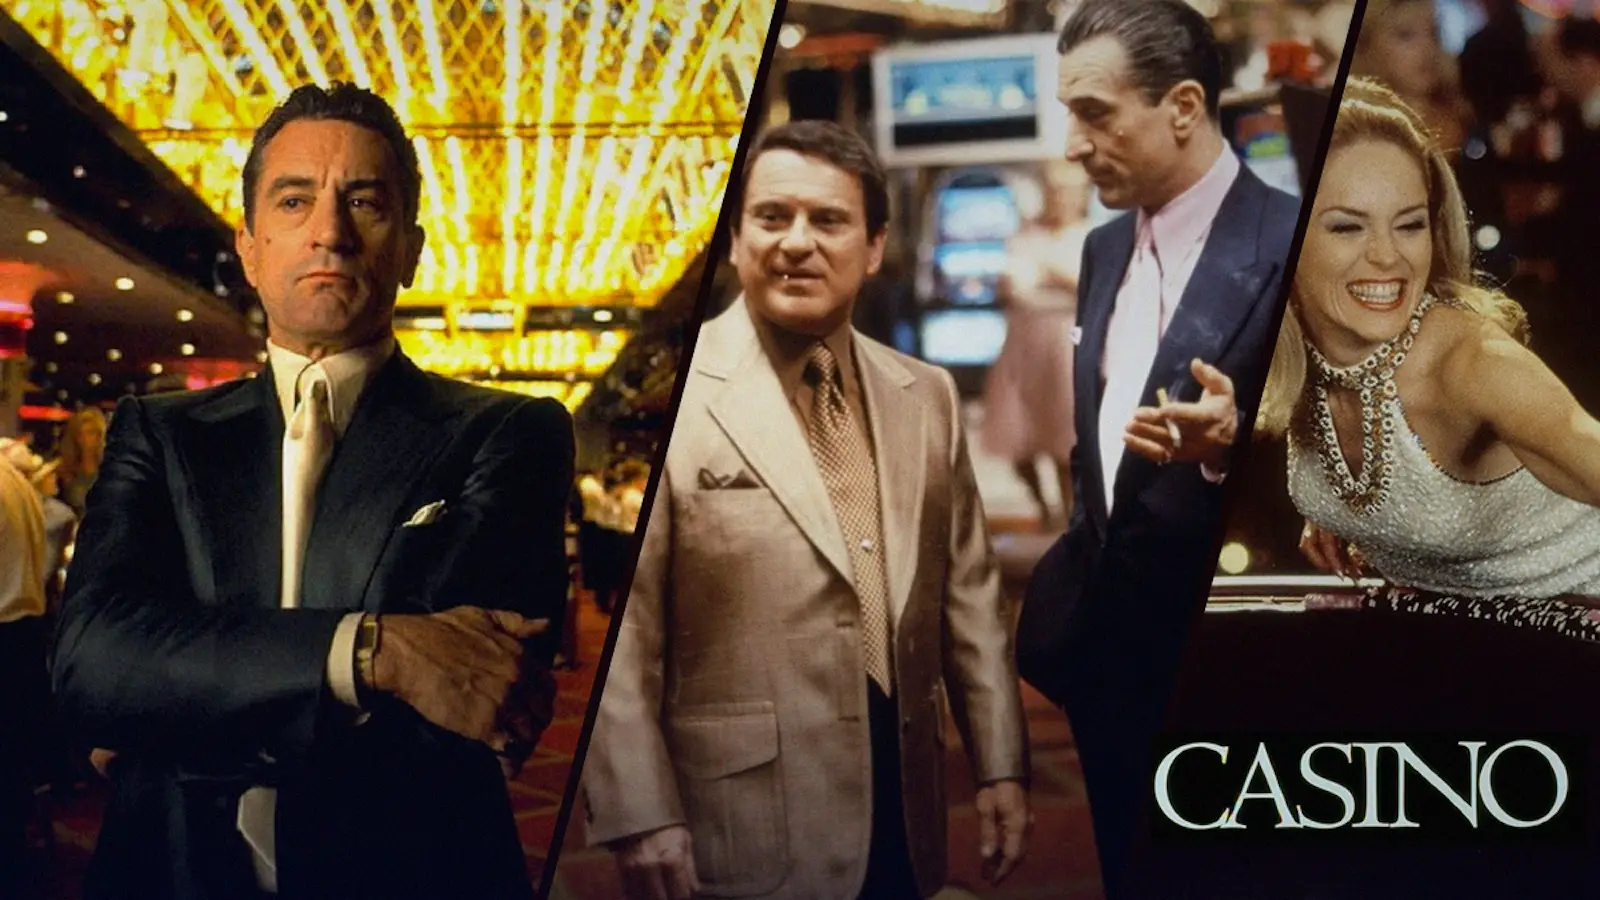 Casino, 1995